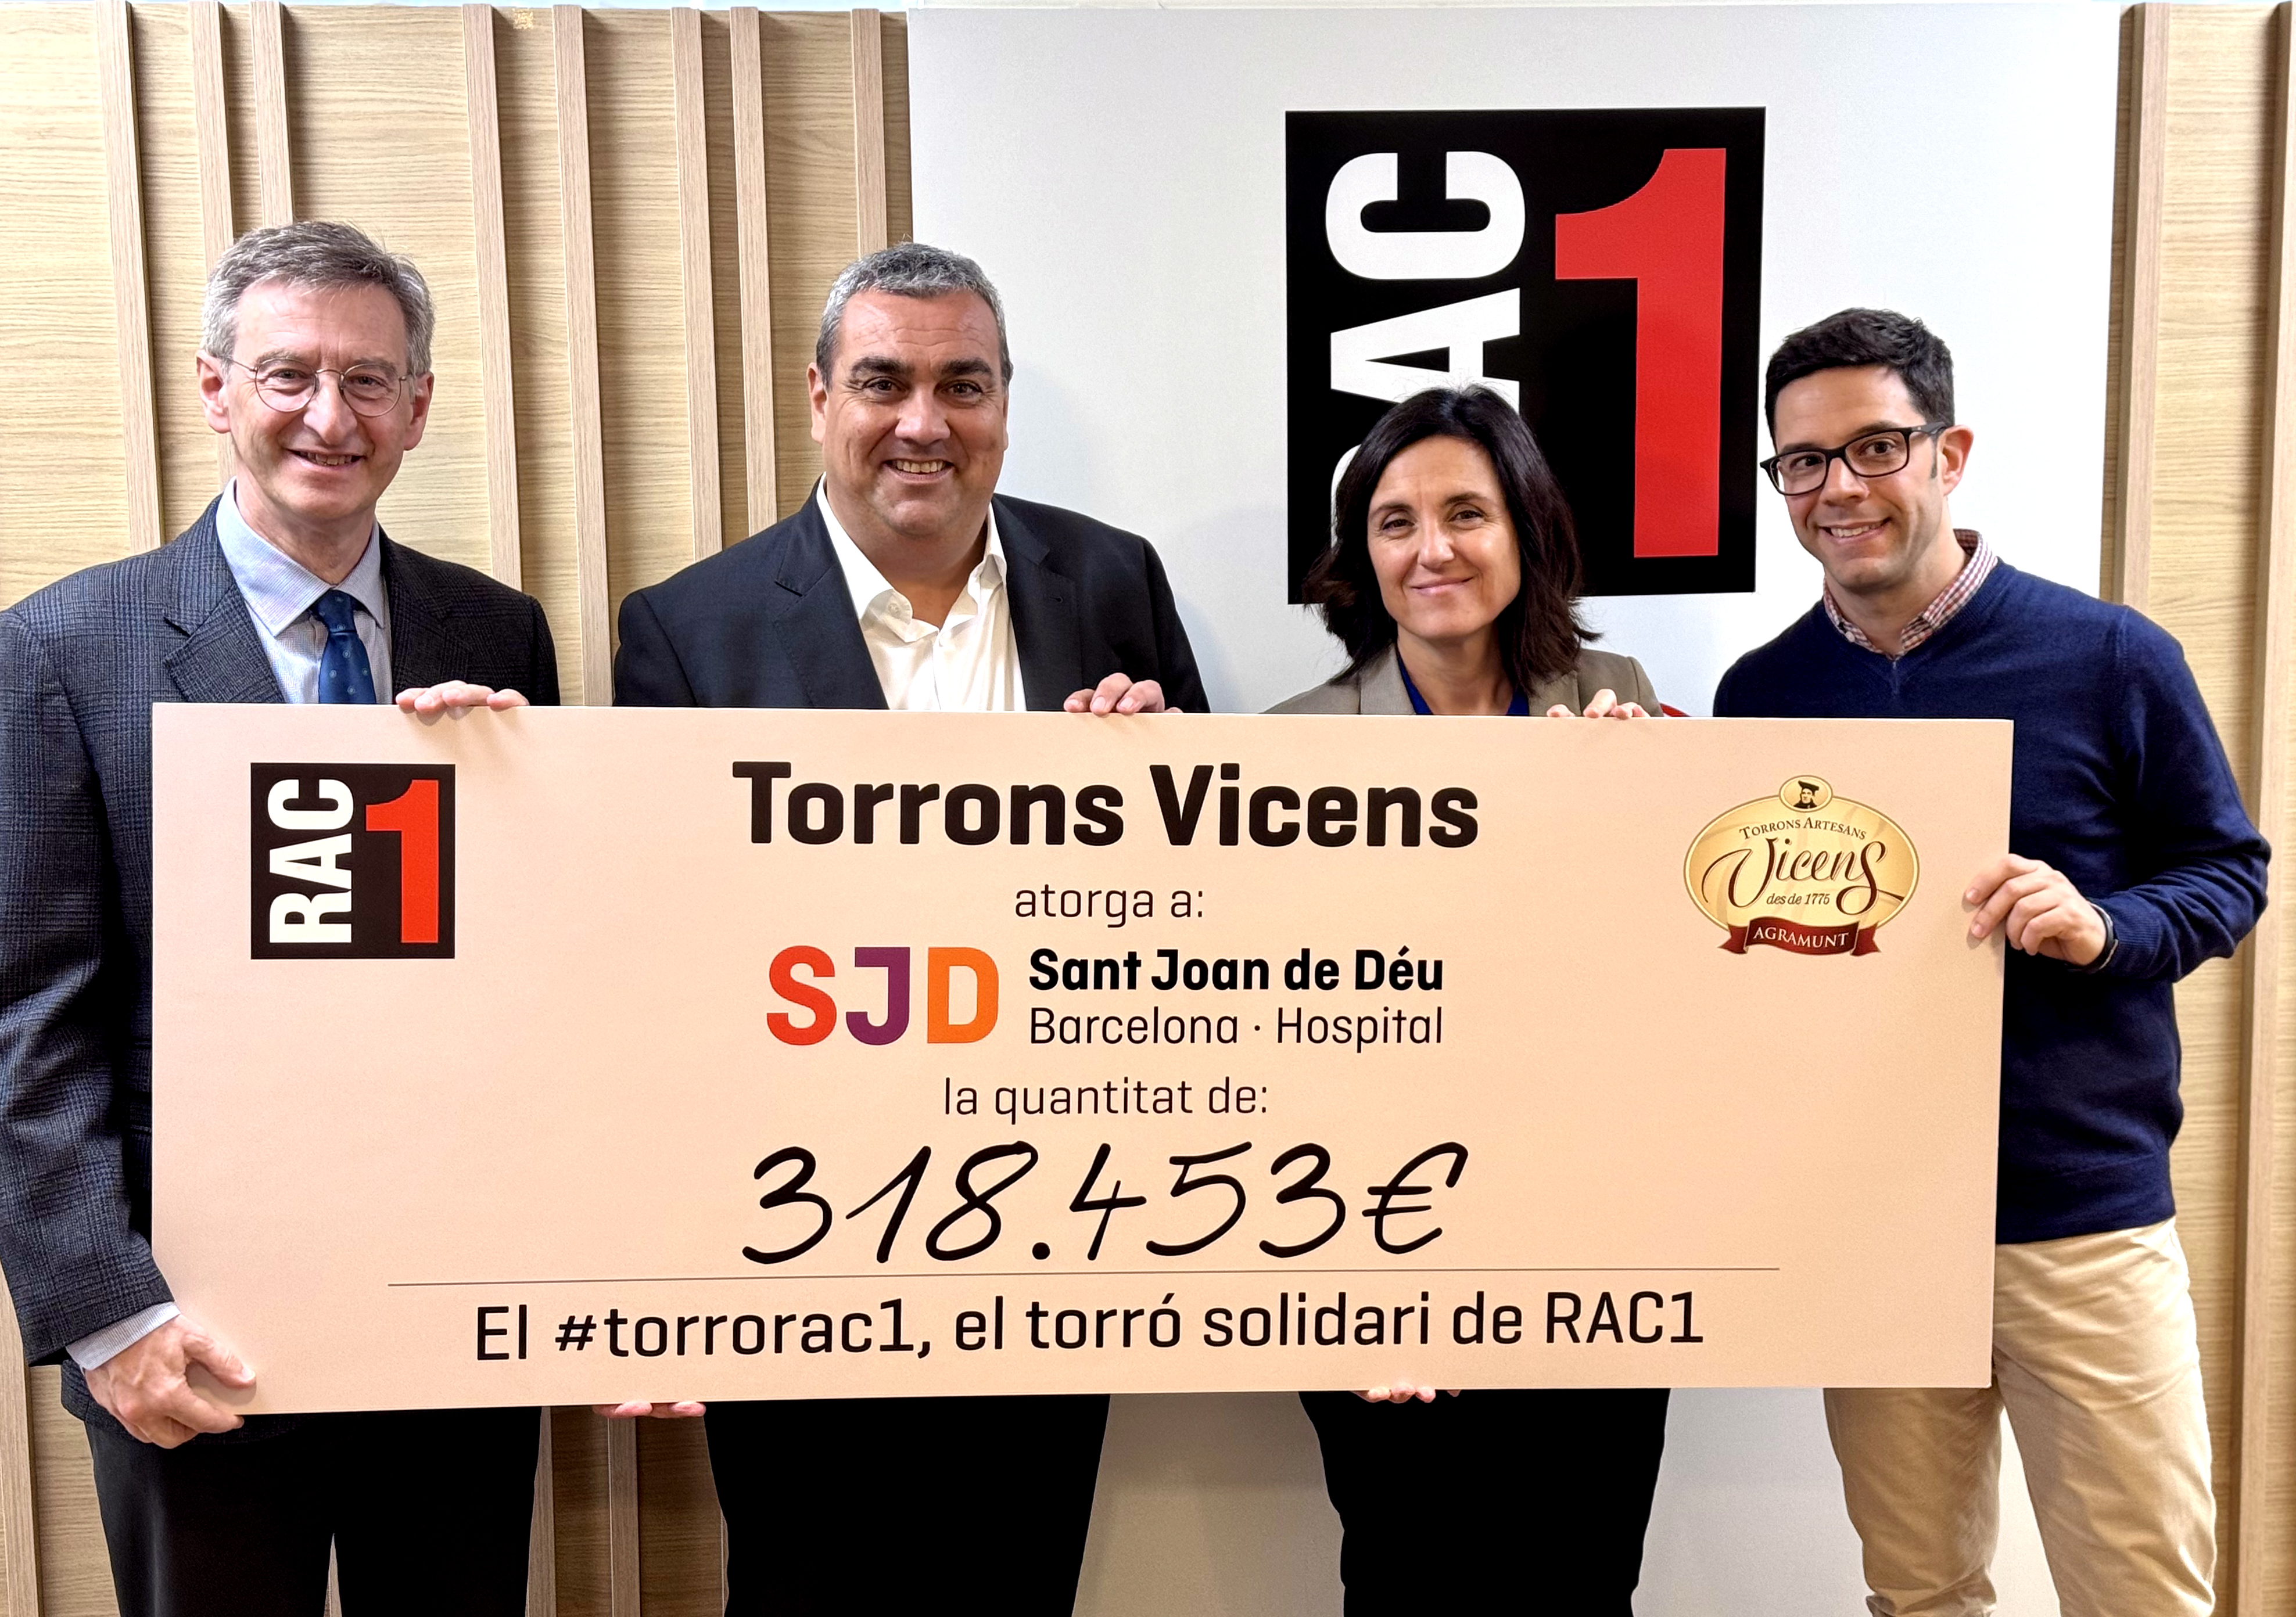 El Torró Solidari de RAC1 i Torrons Vicens supera els dos milions d’euros recaptats per a les malalties minoritàries infantils